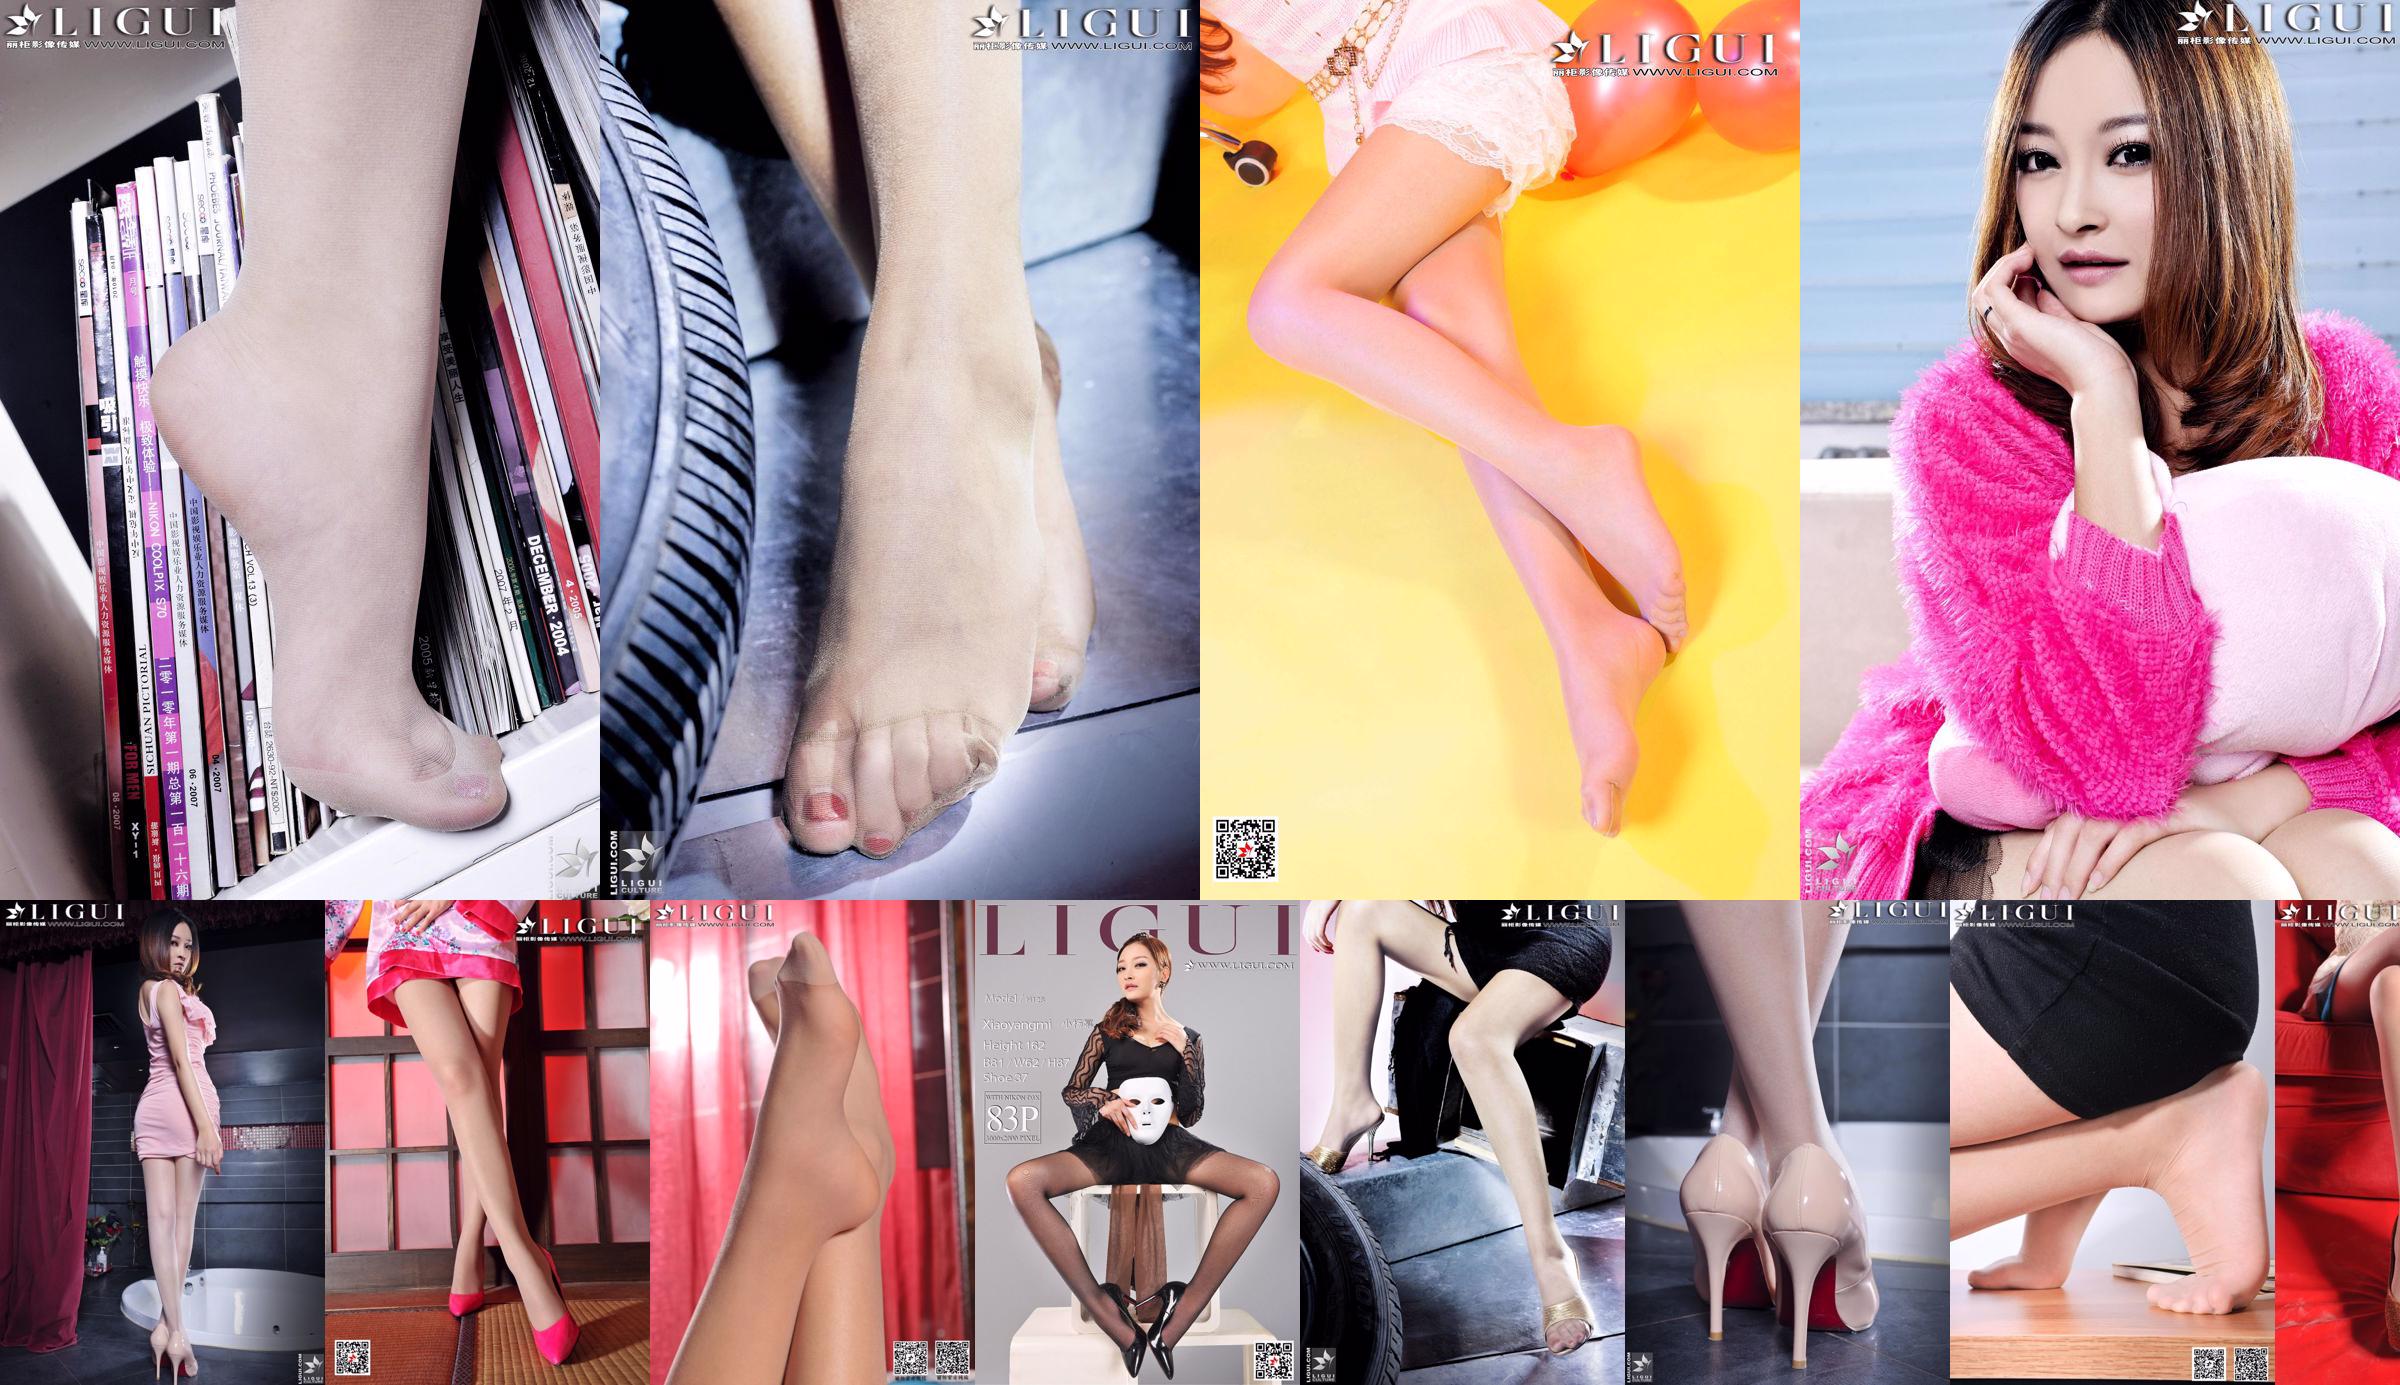 Người mẫu Fangli / Xiao Yang Mi "Sweet Fashion Girl" [Ligui LiGui] Ảnh chân dài ngọc nữ No.00b919 Trang 3